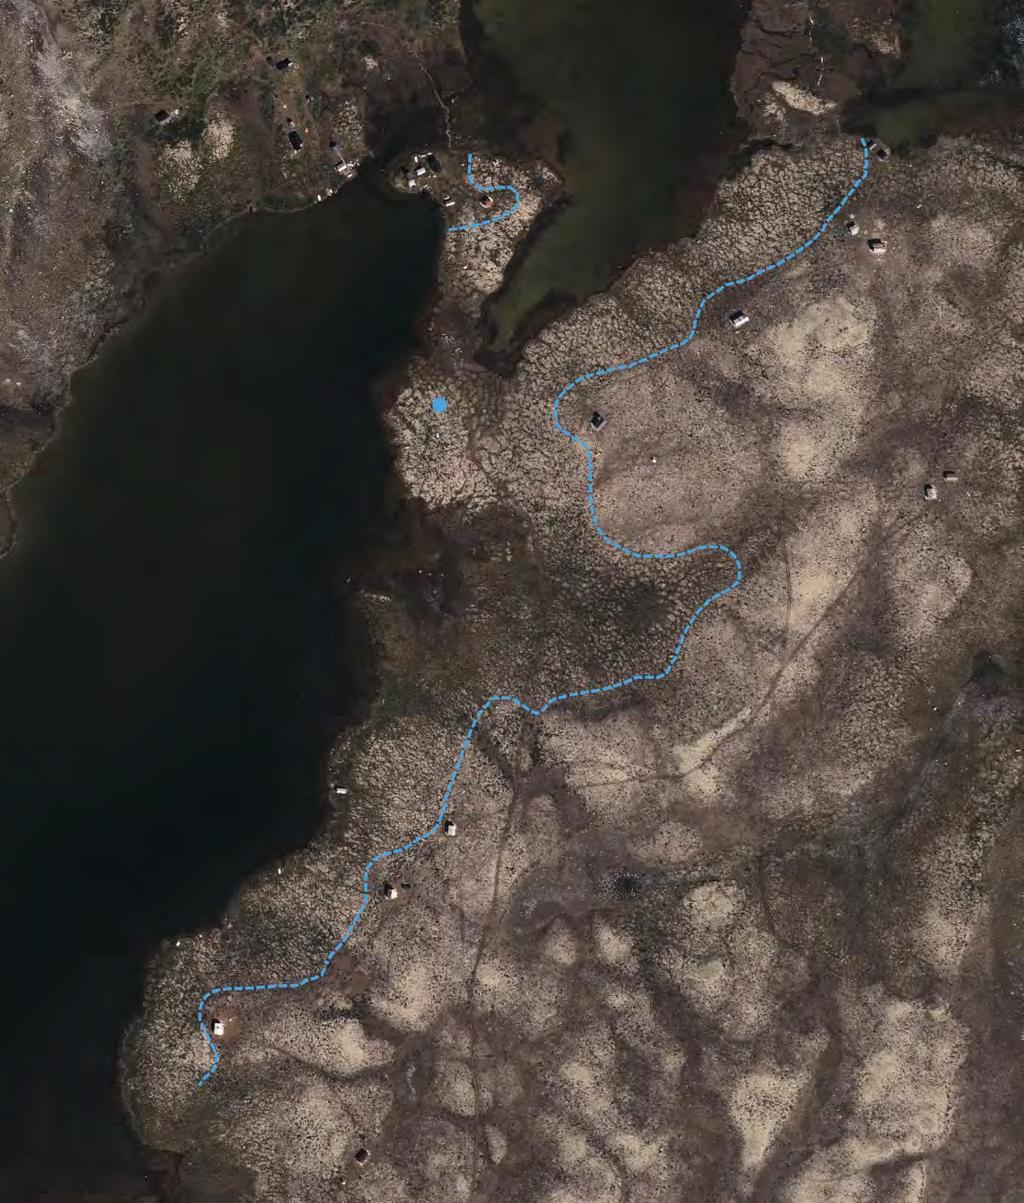 Bilde 1: Flybilde over det aktuelle området ved Grisungvatna. Blå strek markerer forskjell mellom grunnforholdene, og blå prikk viser søkernes forslag til ny tomt.